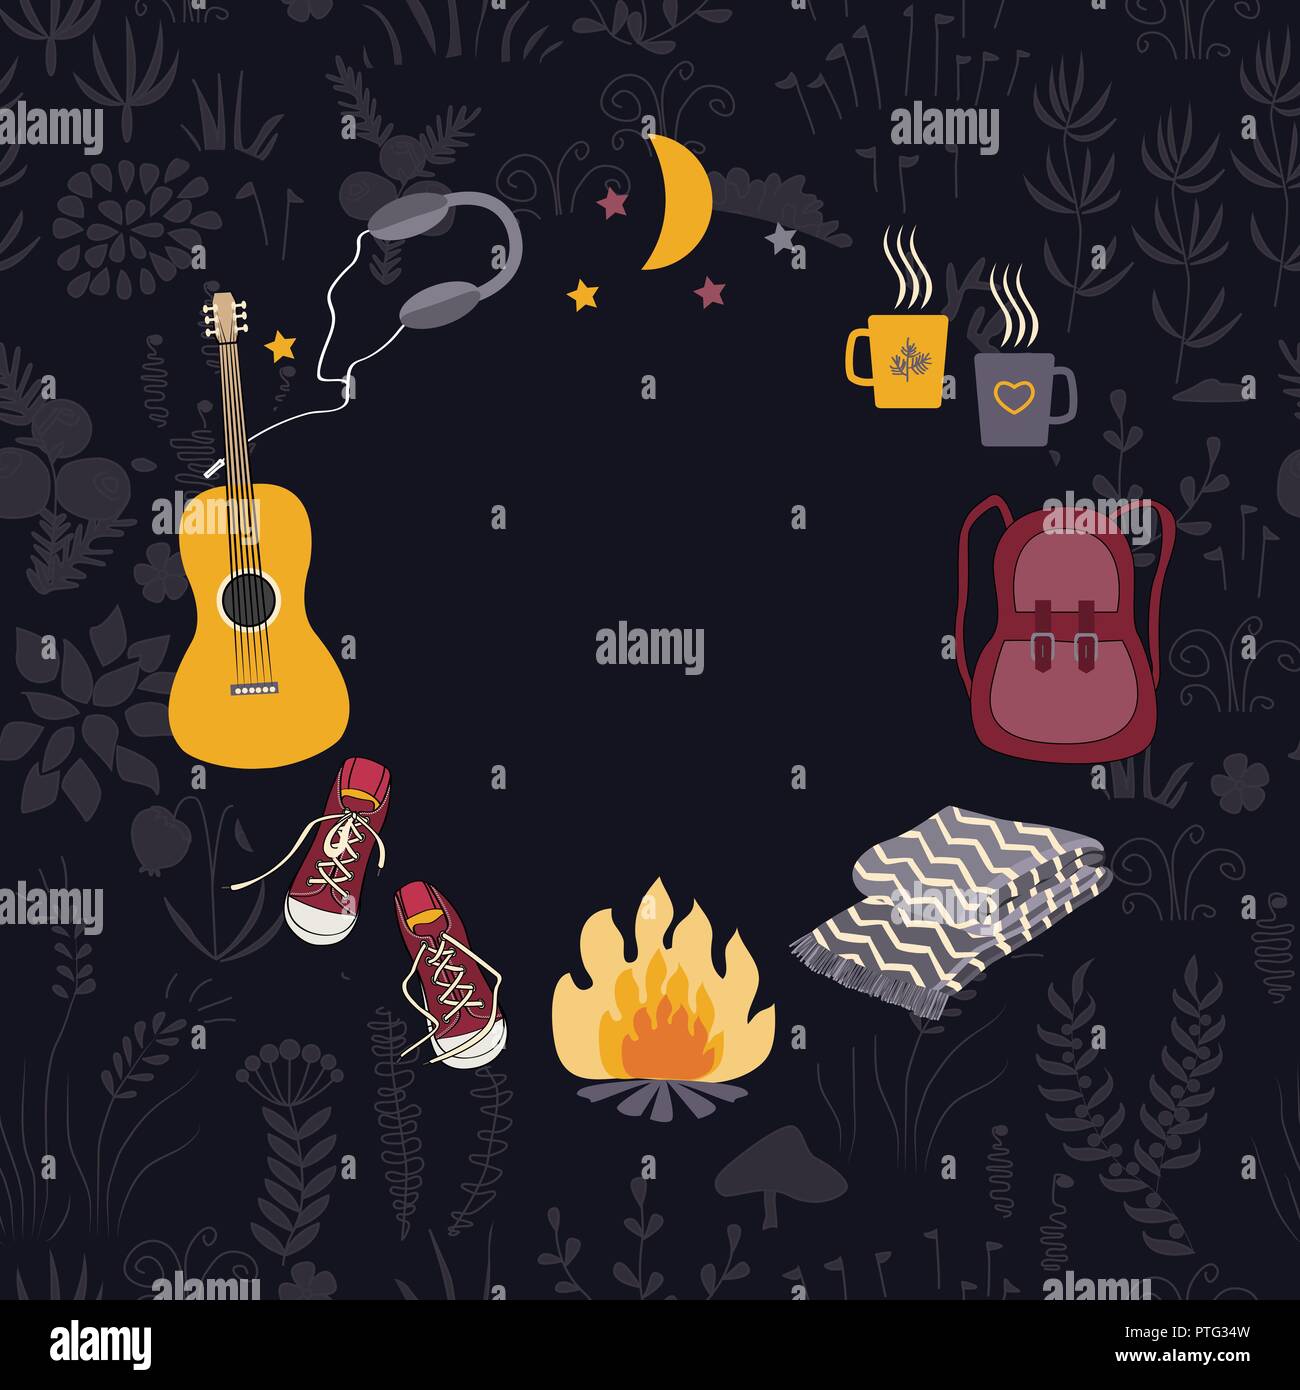 Kreis Camping Rahmen. Muster mit Tourismus und Camping Symbole: Rucksack, Lagerfeuer, Gitarre und Wanderkleidung. Wald floral background. Vektor illust Stock Vektor